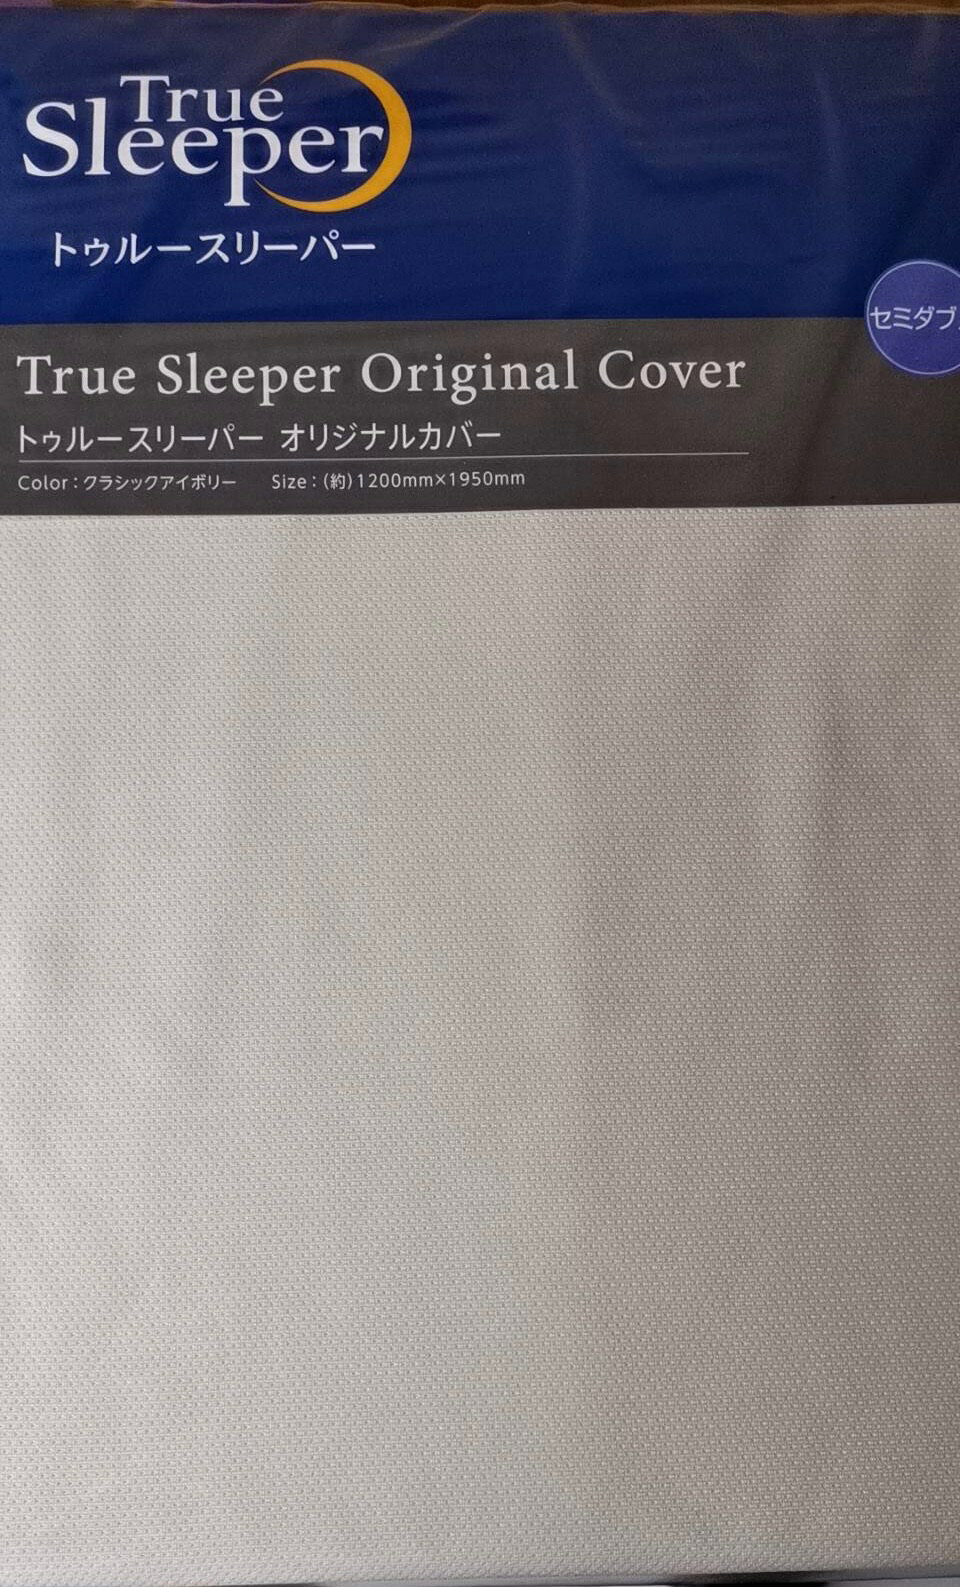 【正規品】 トゥルースリーパー TrueSleeper オリジナルカバー セミダブル クラシックアイボリー